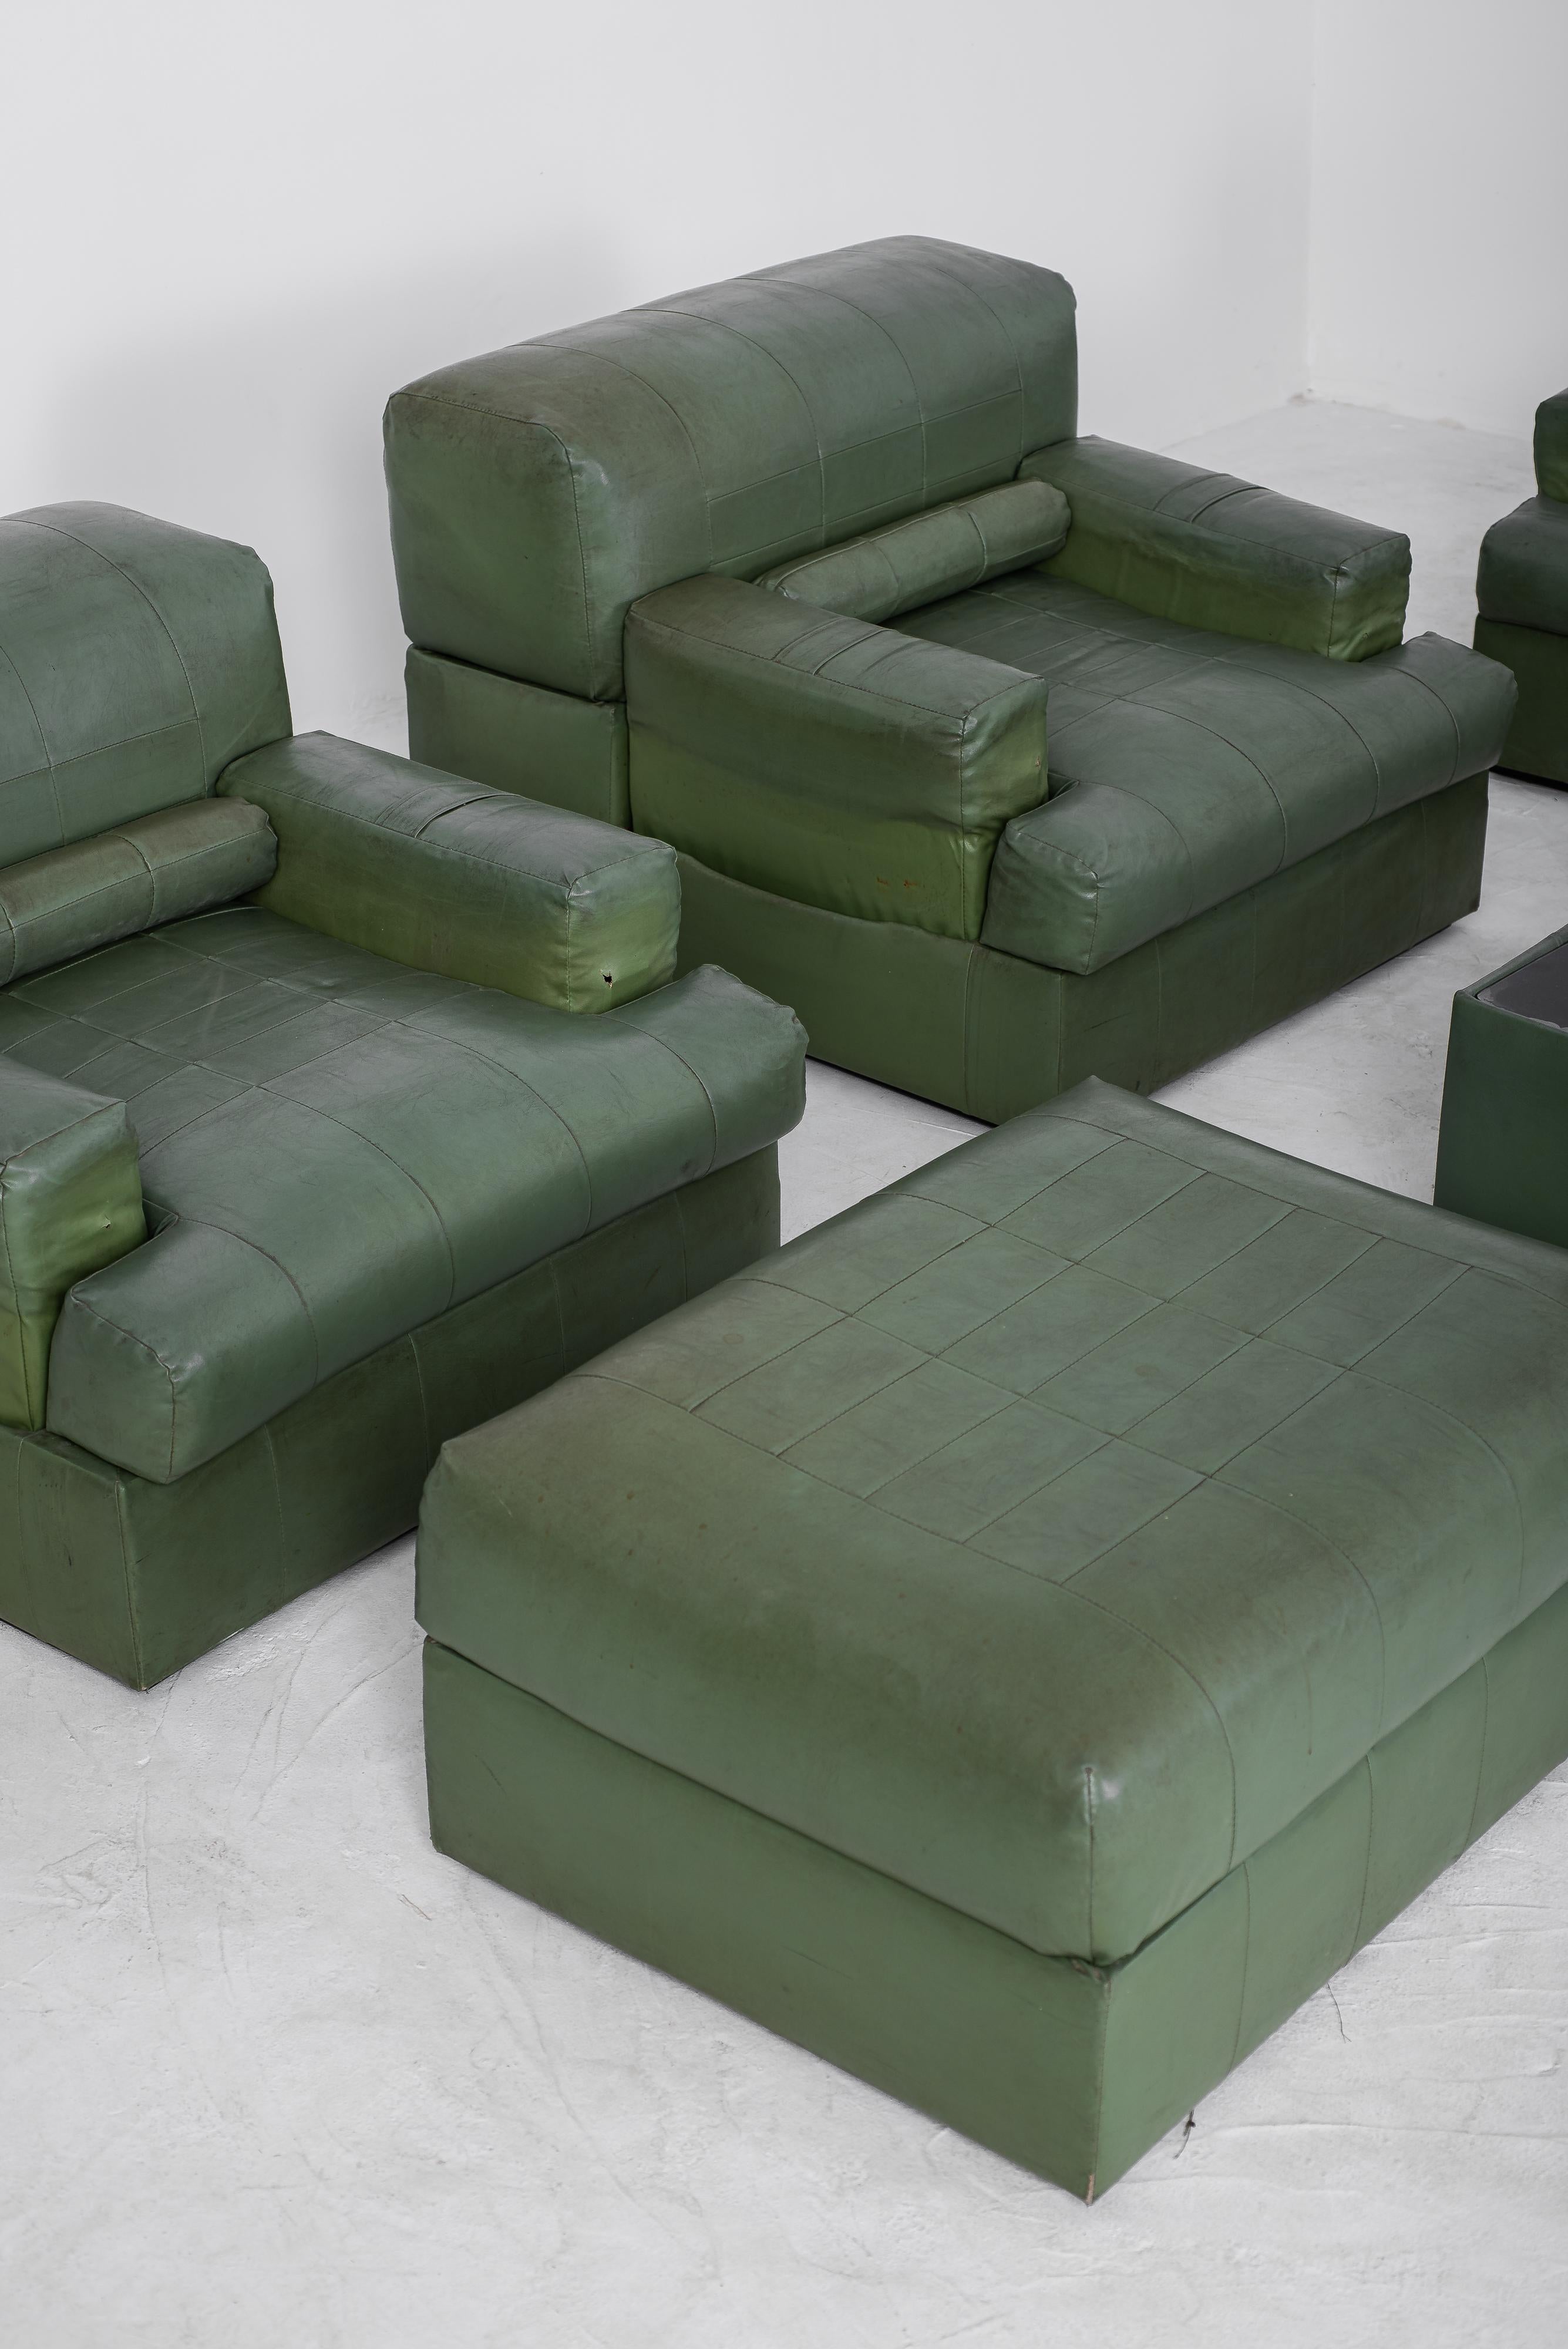 Dieses außergewöhnliche, seltene und fesselnde Sofa wurde von dem renommierten brasilianischen Designer Percival Lafer entworfen und ist ein Zeugnis von Seltenheit und Schönheit. Das modulare Design zeichnet sich durch ein bemerkenswertes Merkmal